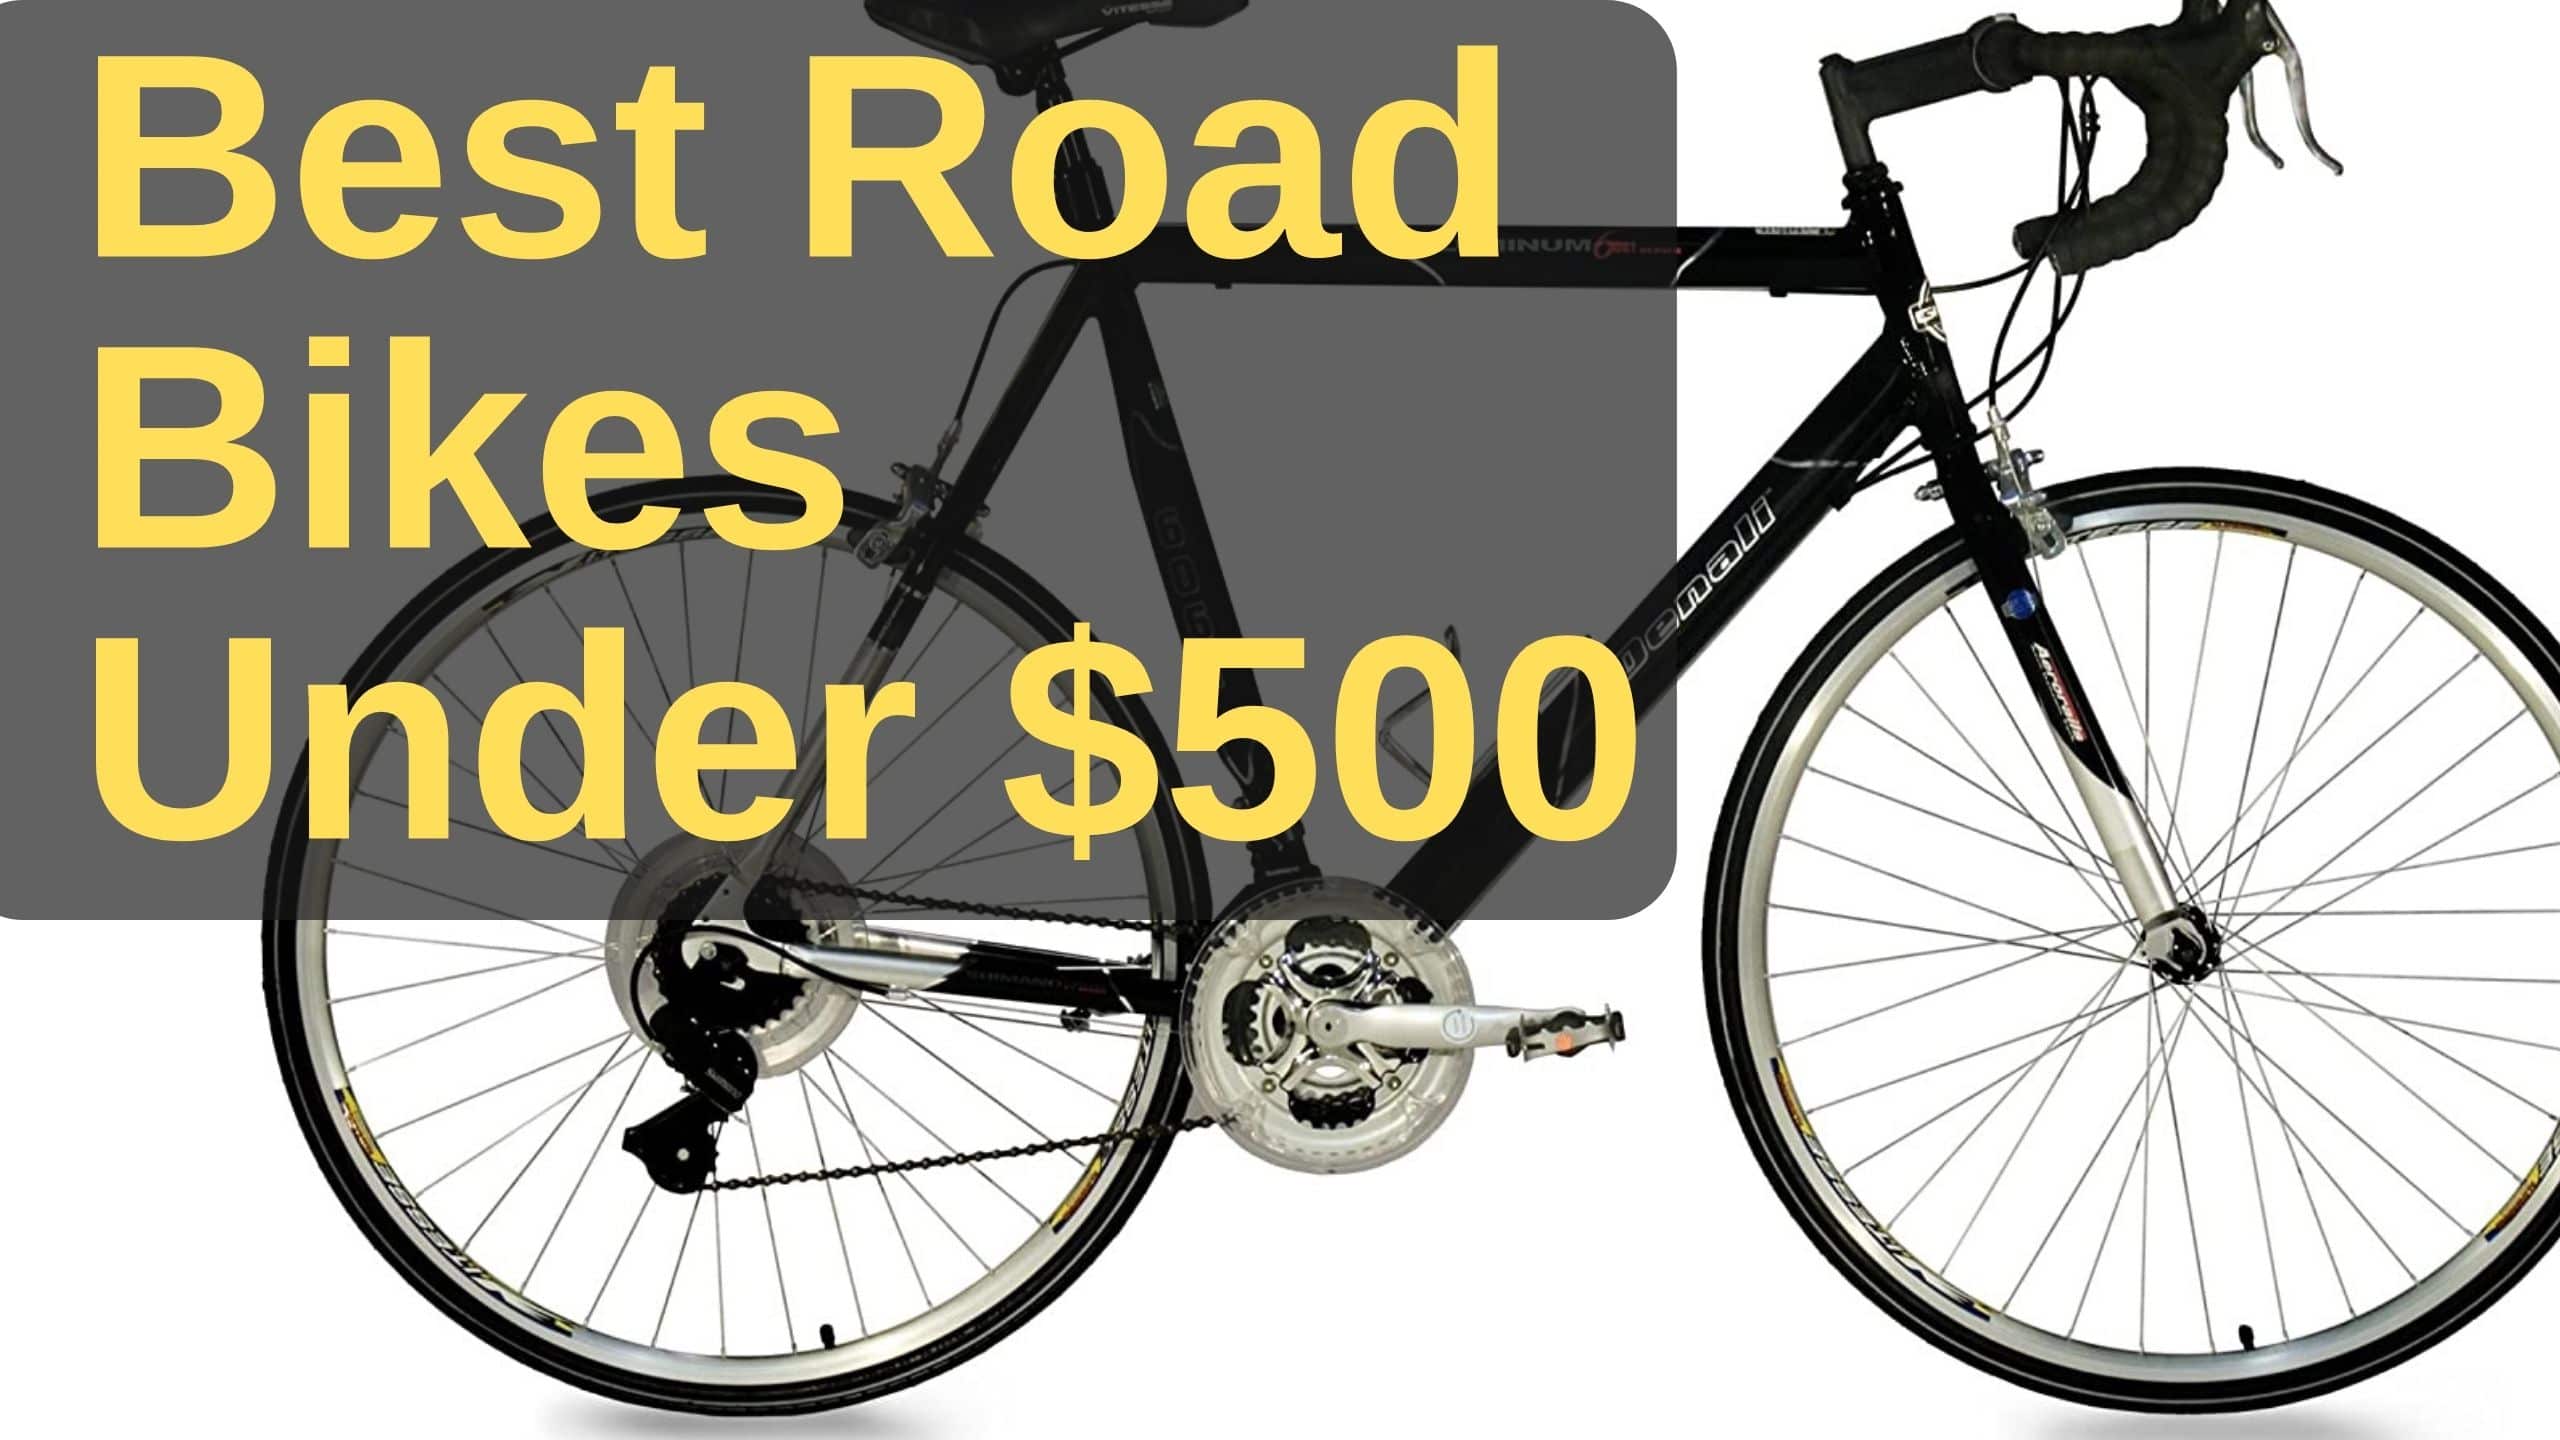 Best Road Bikes Under $500